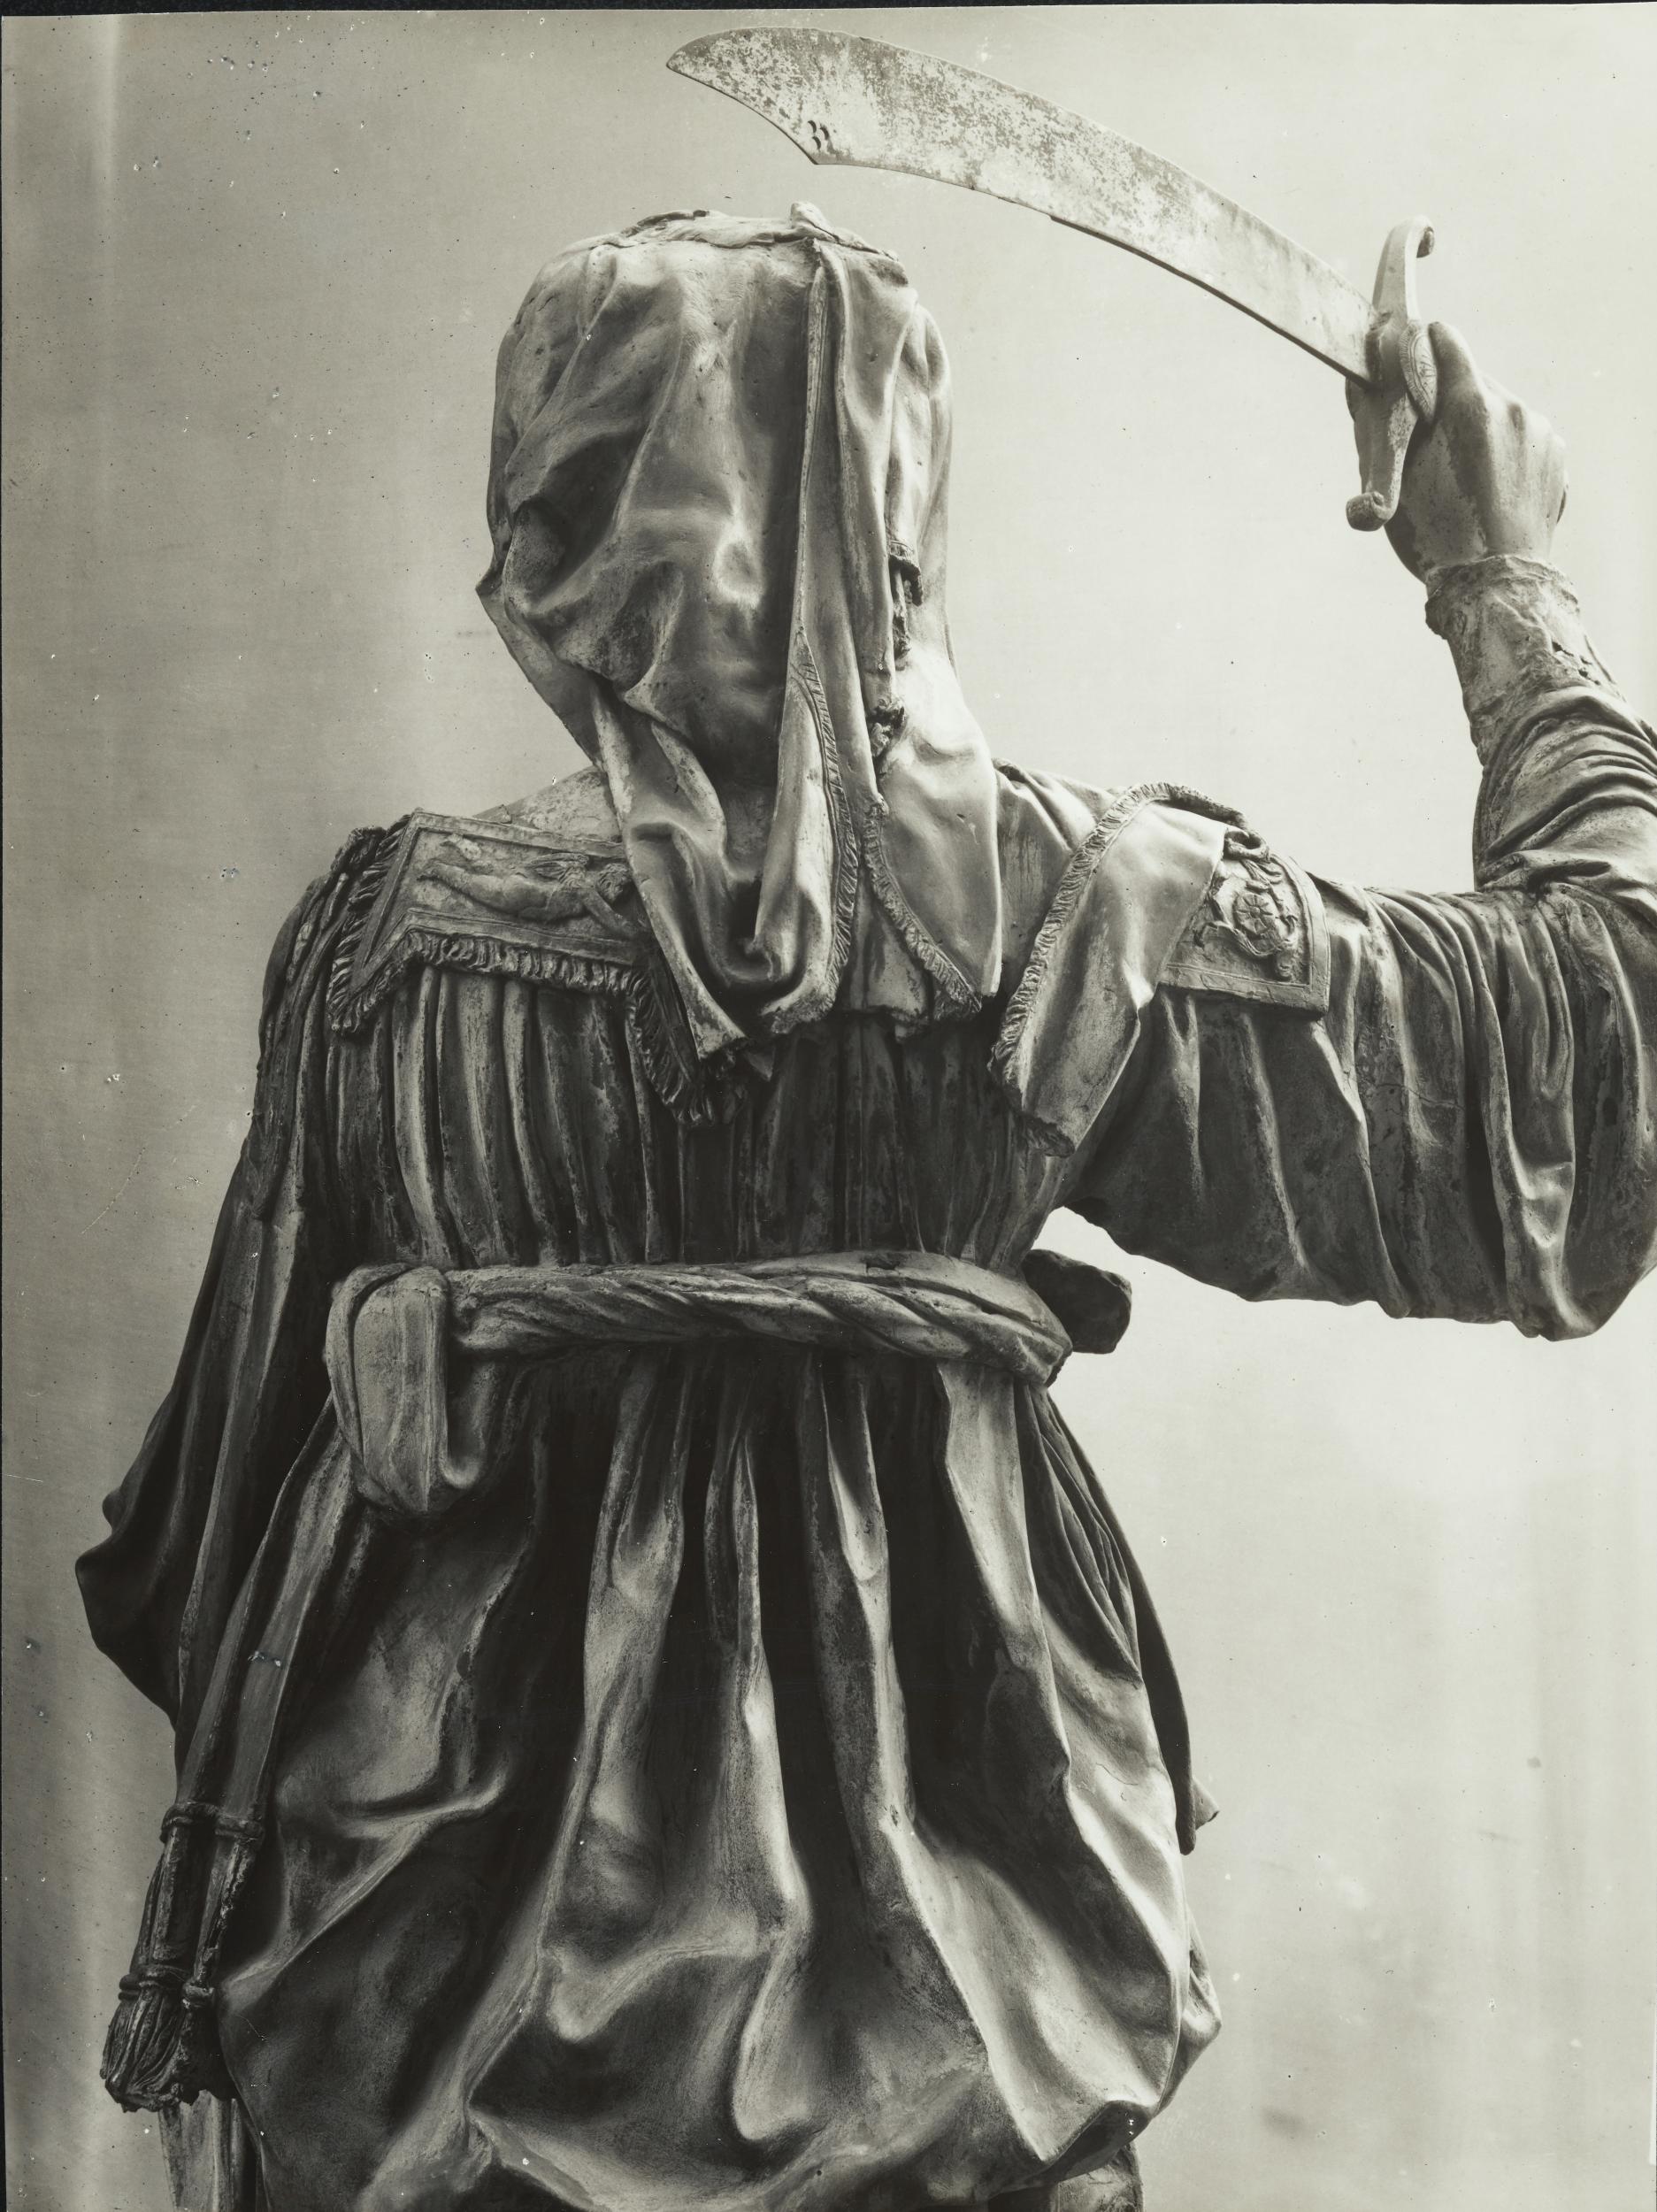 Gino Malenotti, Firenze - Piazza della Signoria, oggi a Palazzo Vecchio, La Giuditta, mezzo busto, 1931- 1938, gelatina ai sali d'argento, MPI6022132